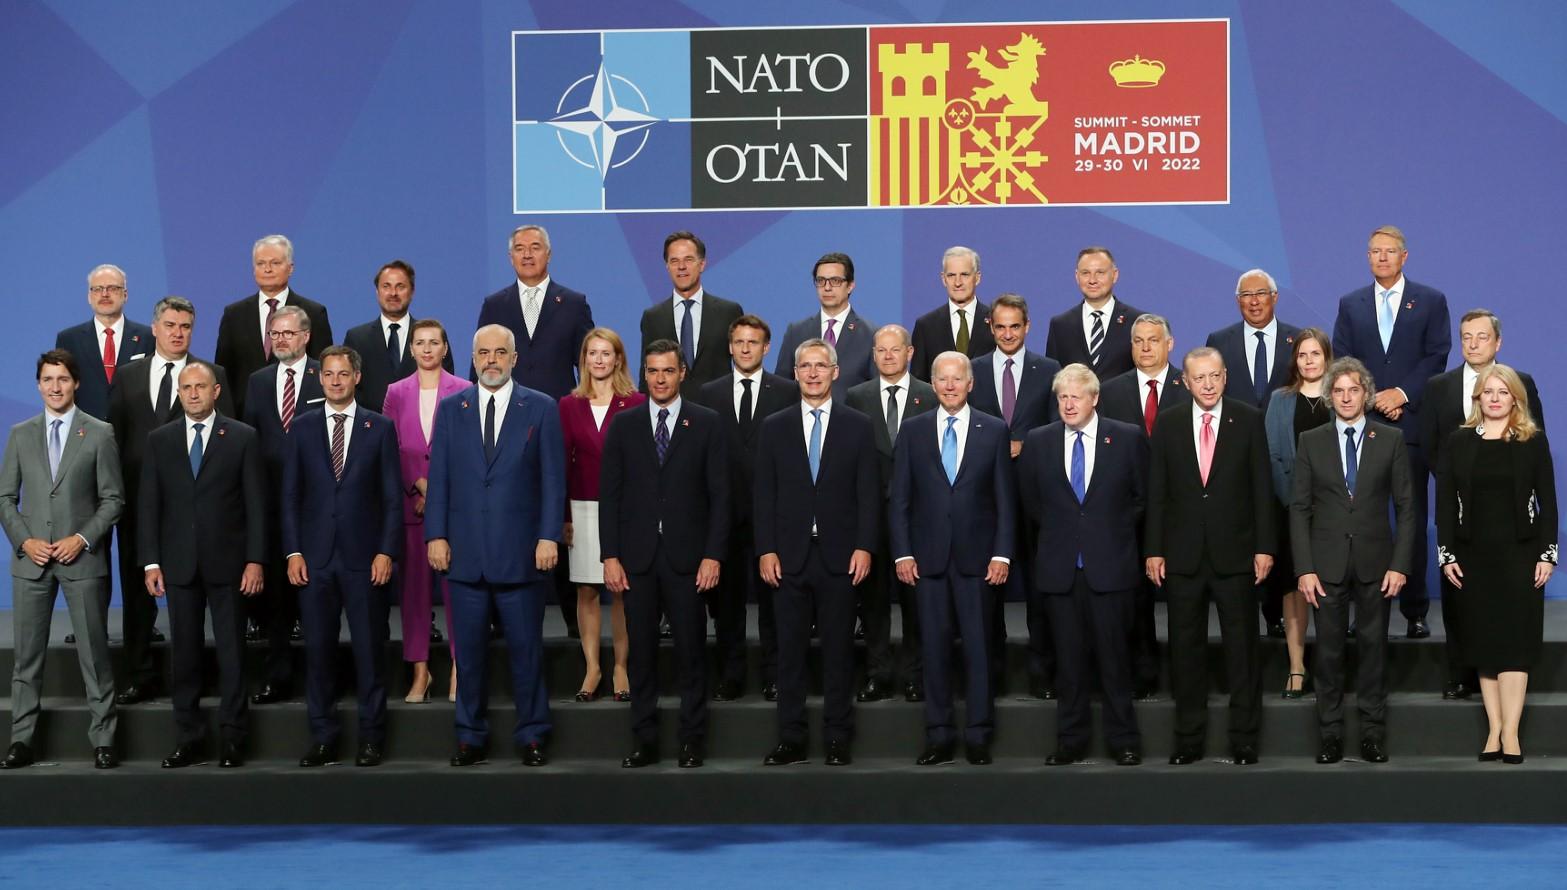 Počeo samit NATO-a u Madridu: Prisustvuju predsjednici i šefovi vlada država članica